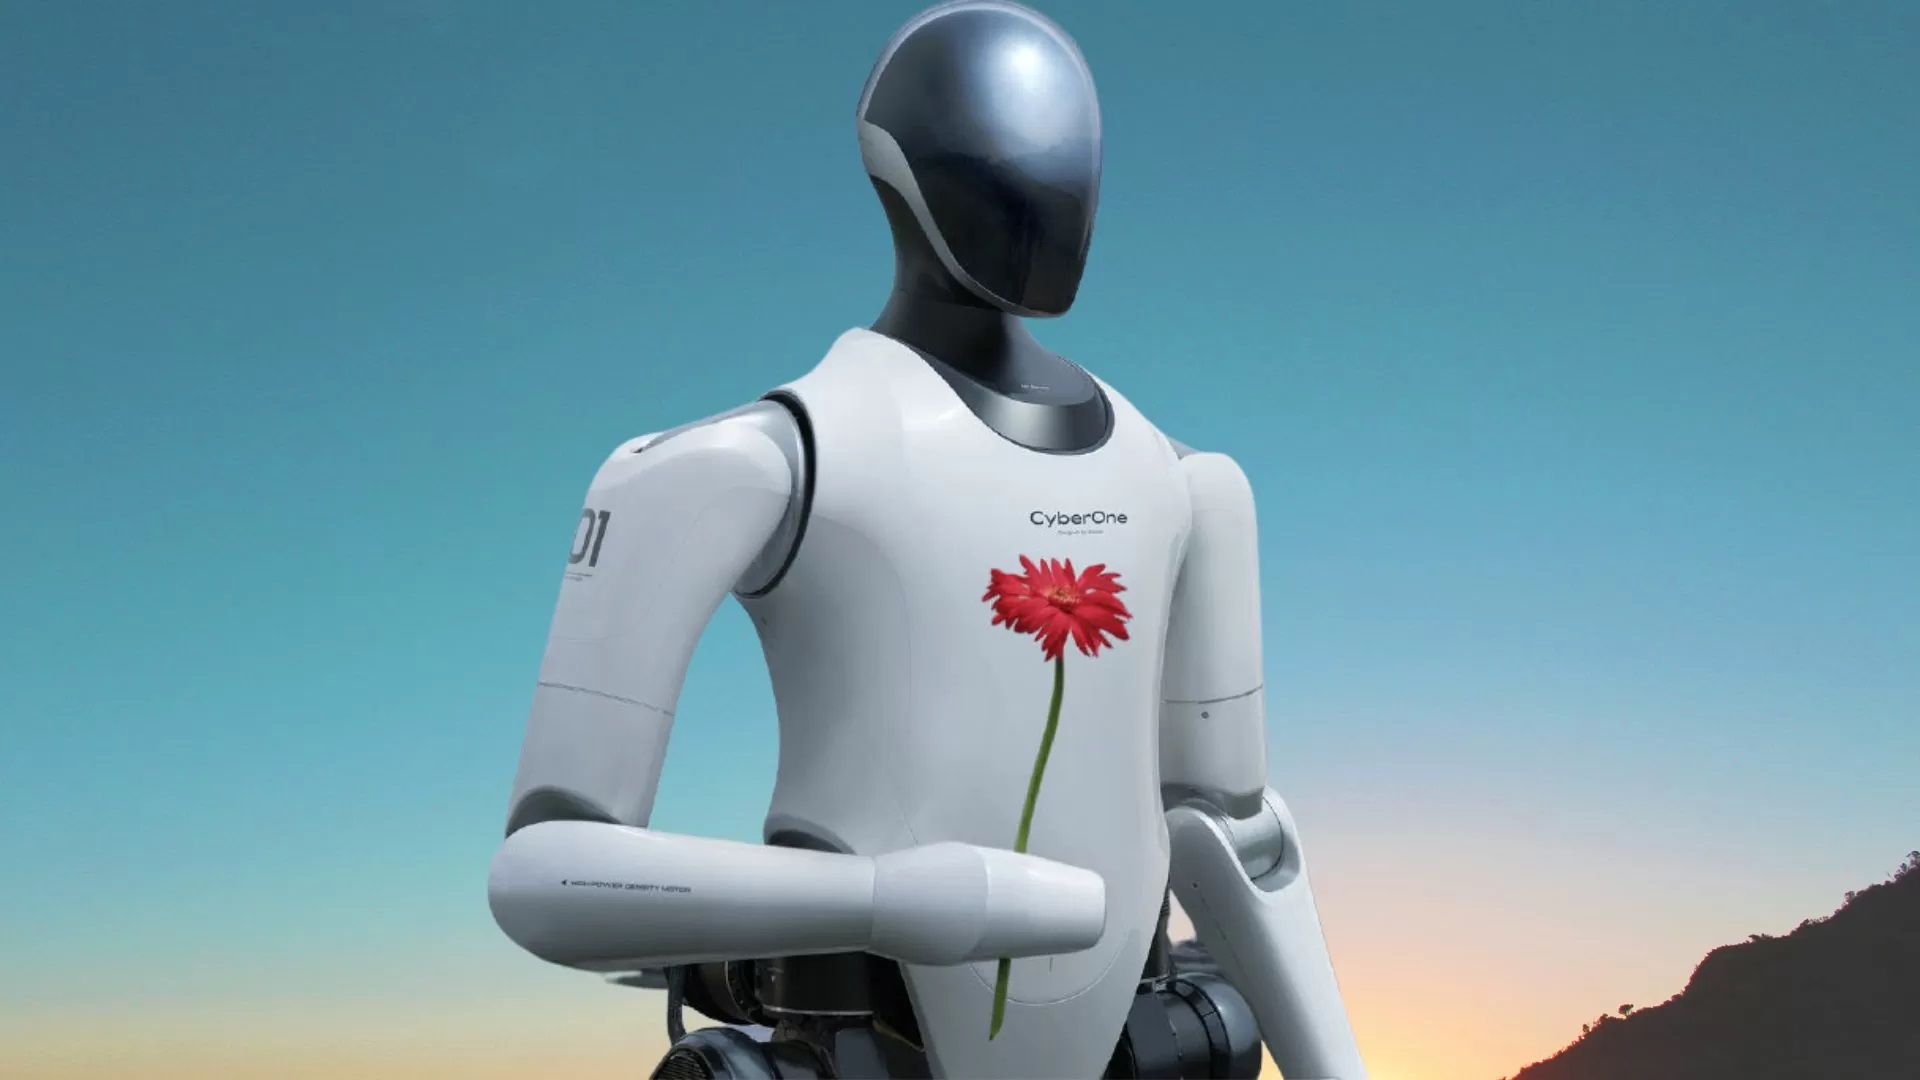 Xiaomi ha introdotto il robot umanoide CyberOne: può comunicare, riconoscere emozioni e regalare fiori